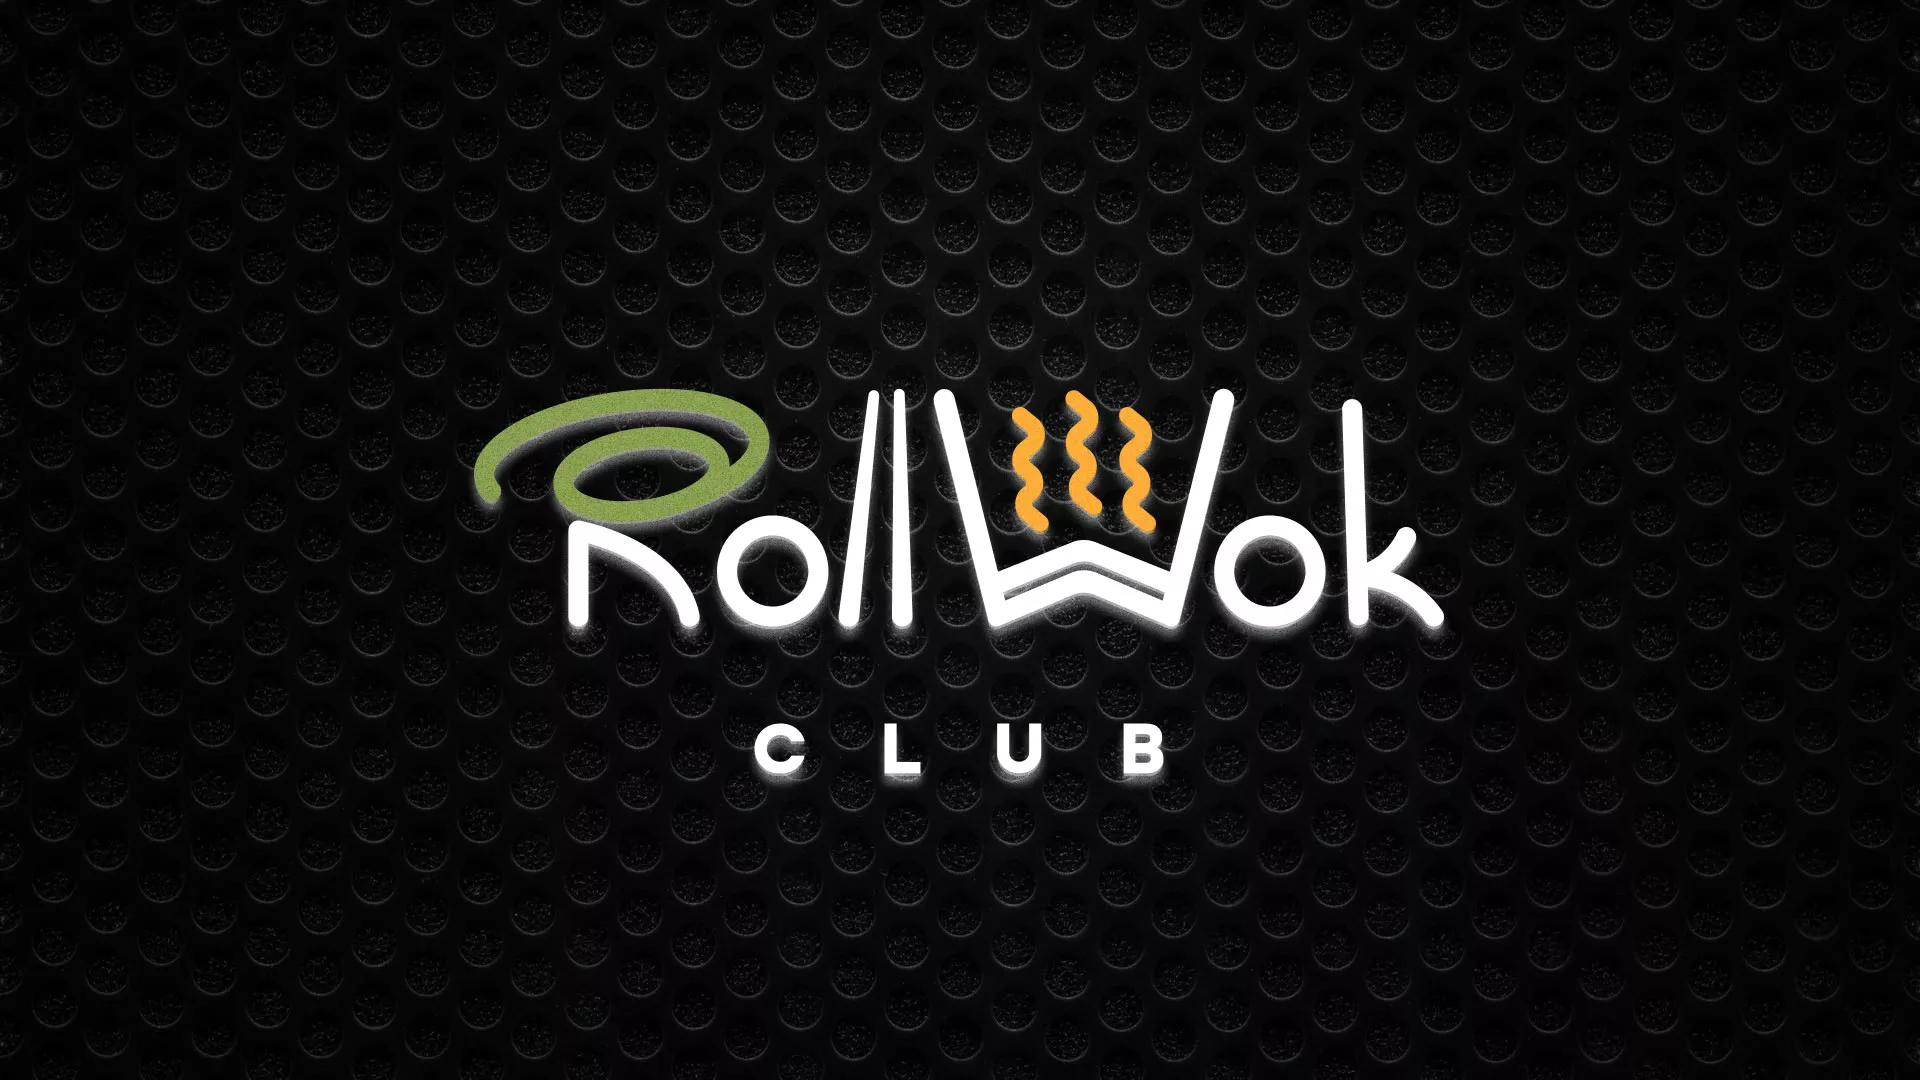 Брендирование торговых точек суши-бара «Roll Wok Club» в Барнауле